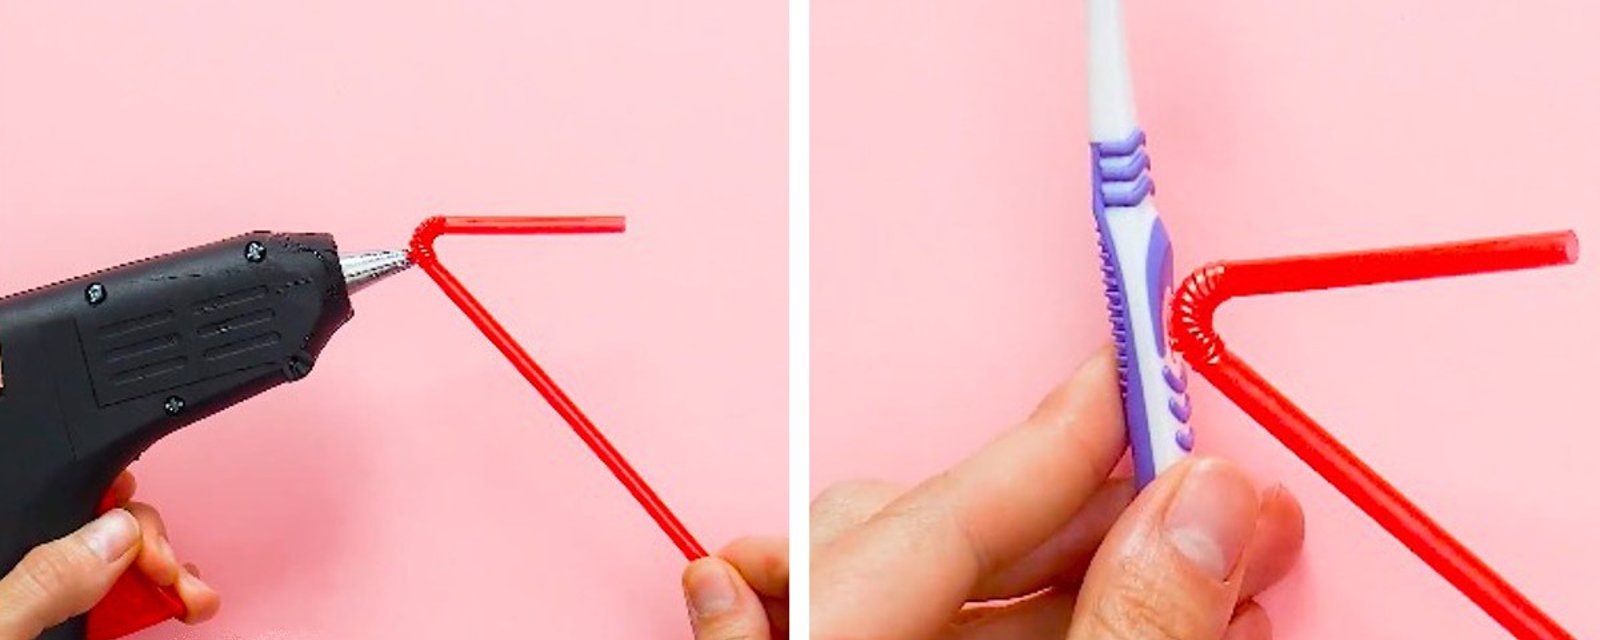 En collant une paille sur sa brosse à dents, elle réinvente cet accessoire indispensable à jamais! 